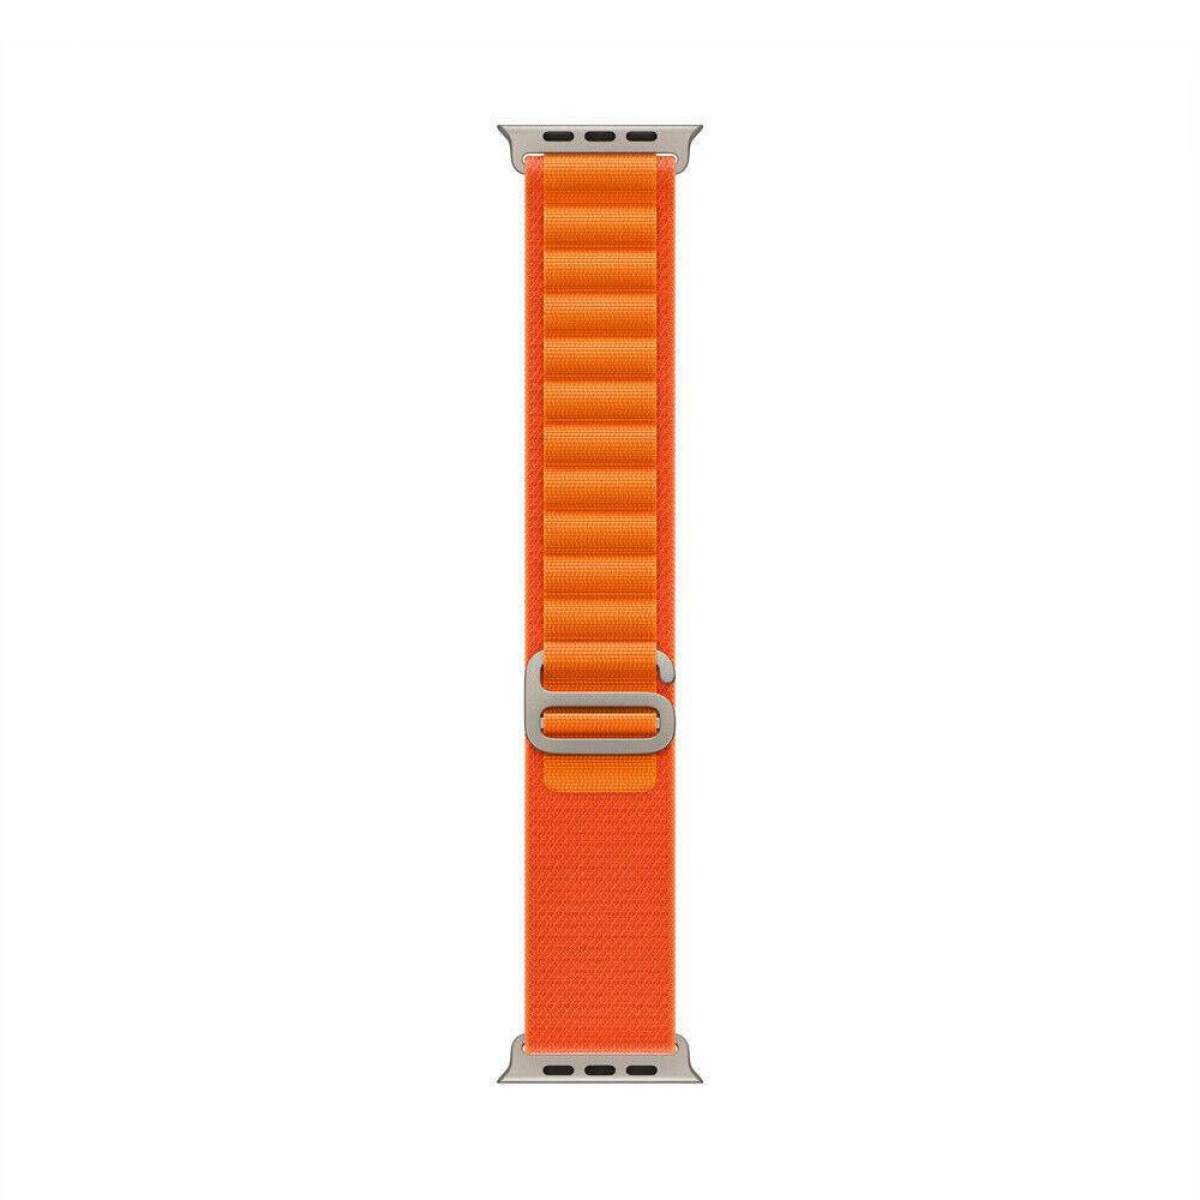 7 Artic, 41mm, Smartband, Orange Watch Apple, CASEONLINE